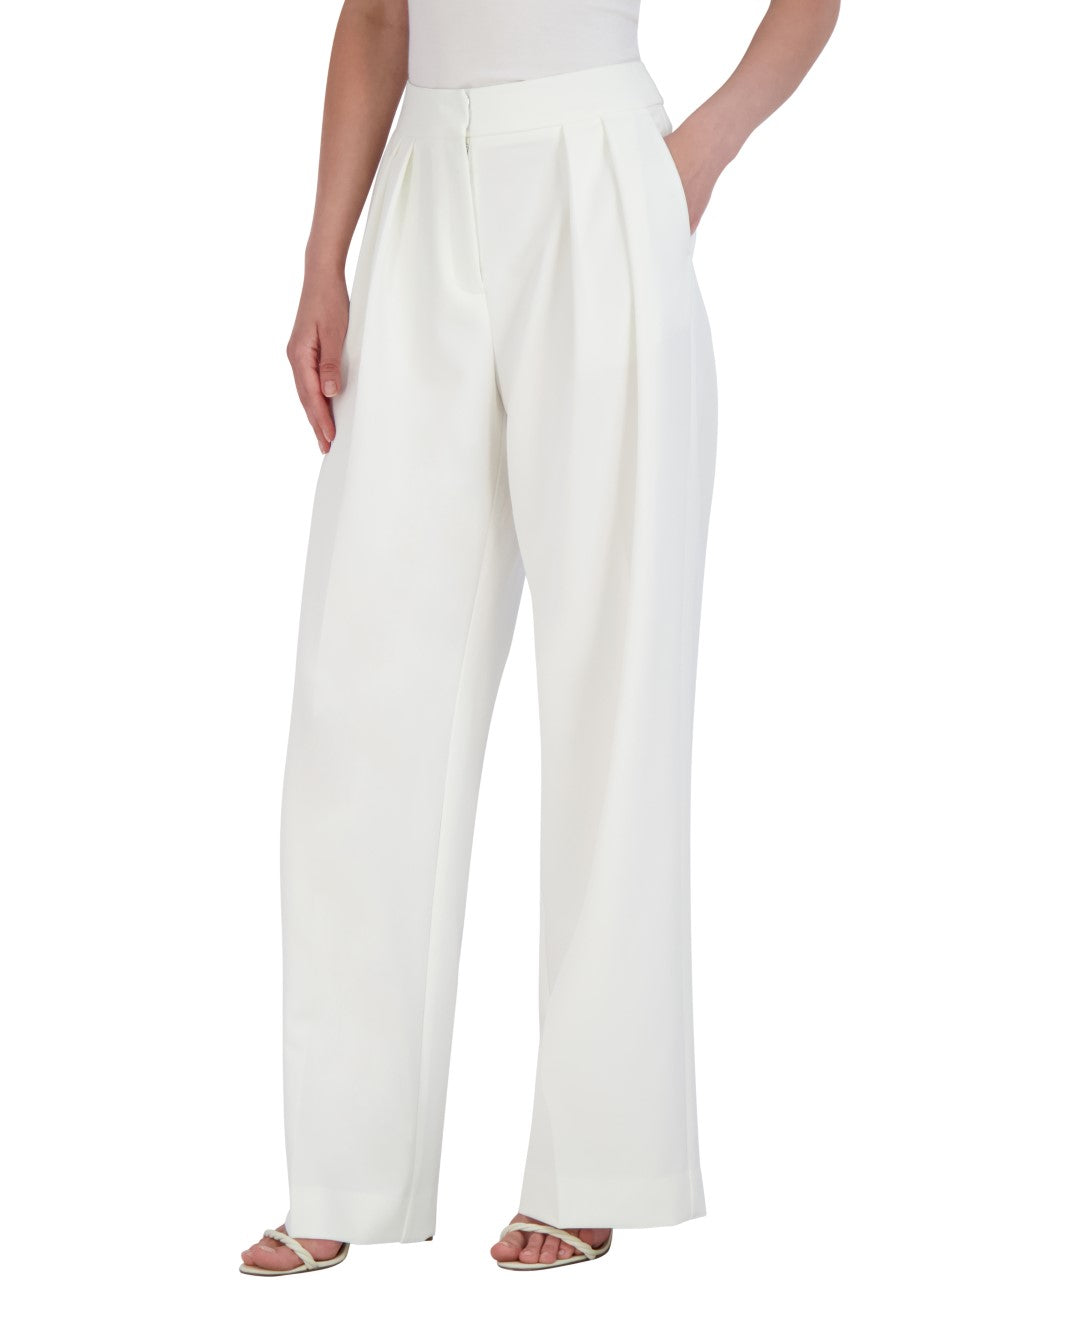 white-palazzo-trousers_2x01b06_gardenia_03